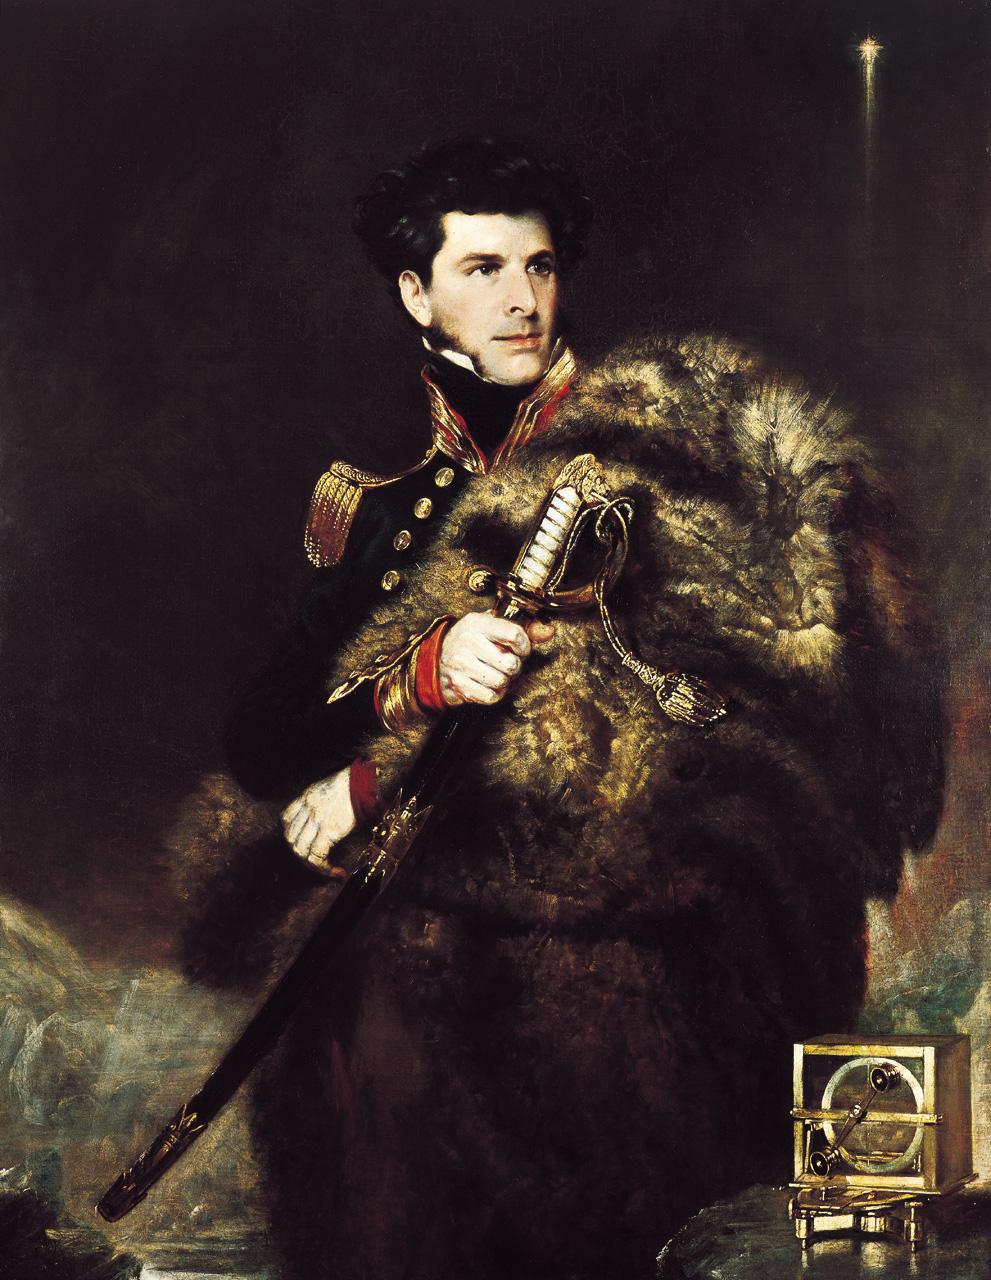 Commander James Clark Ross, 1800-62 